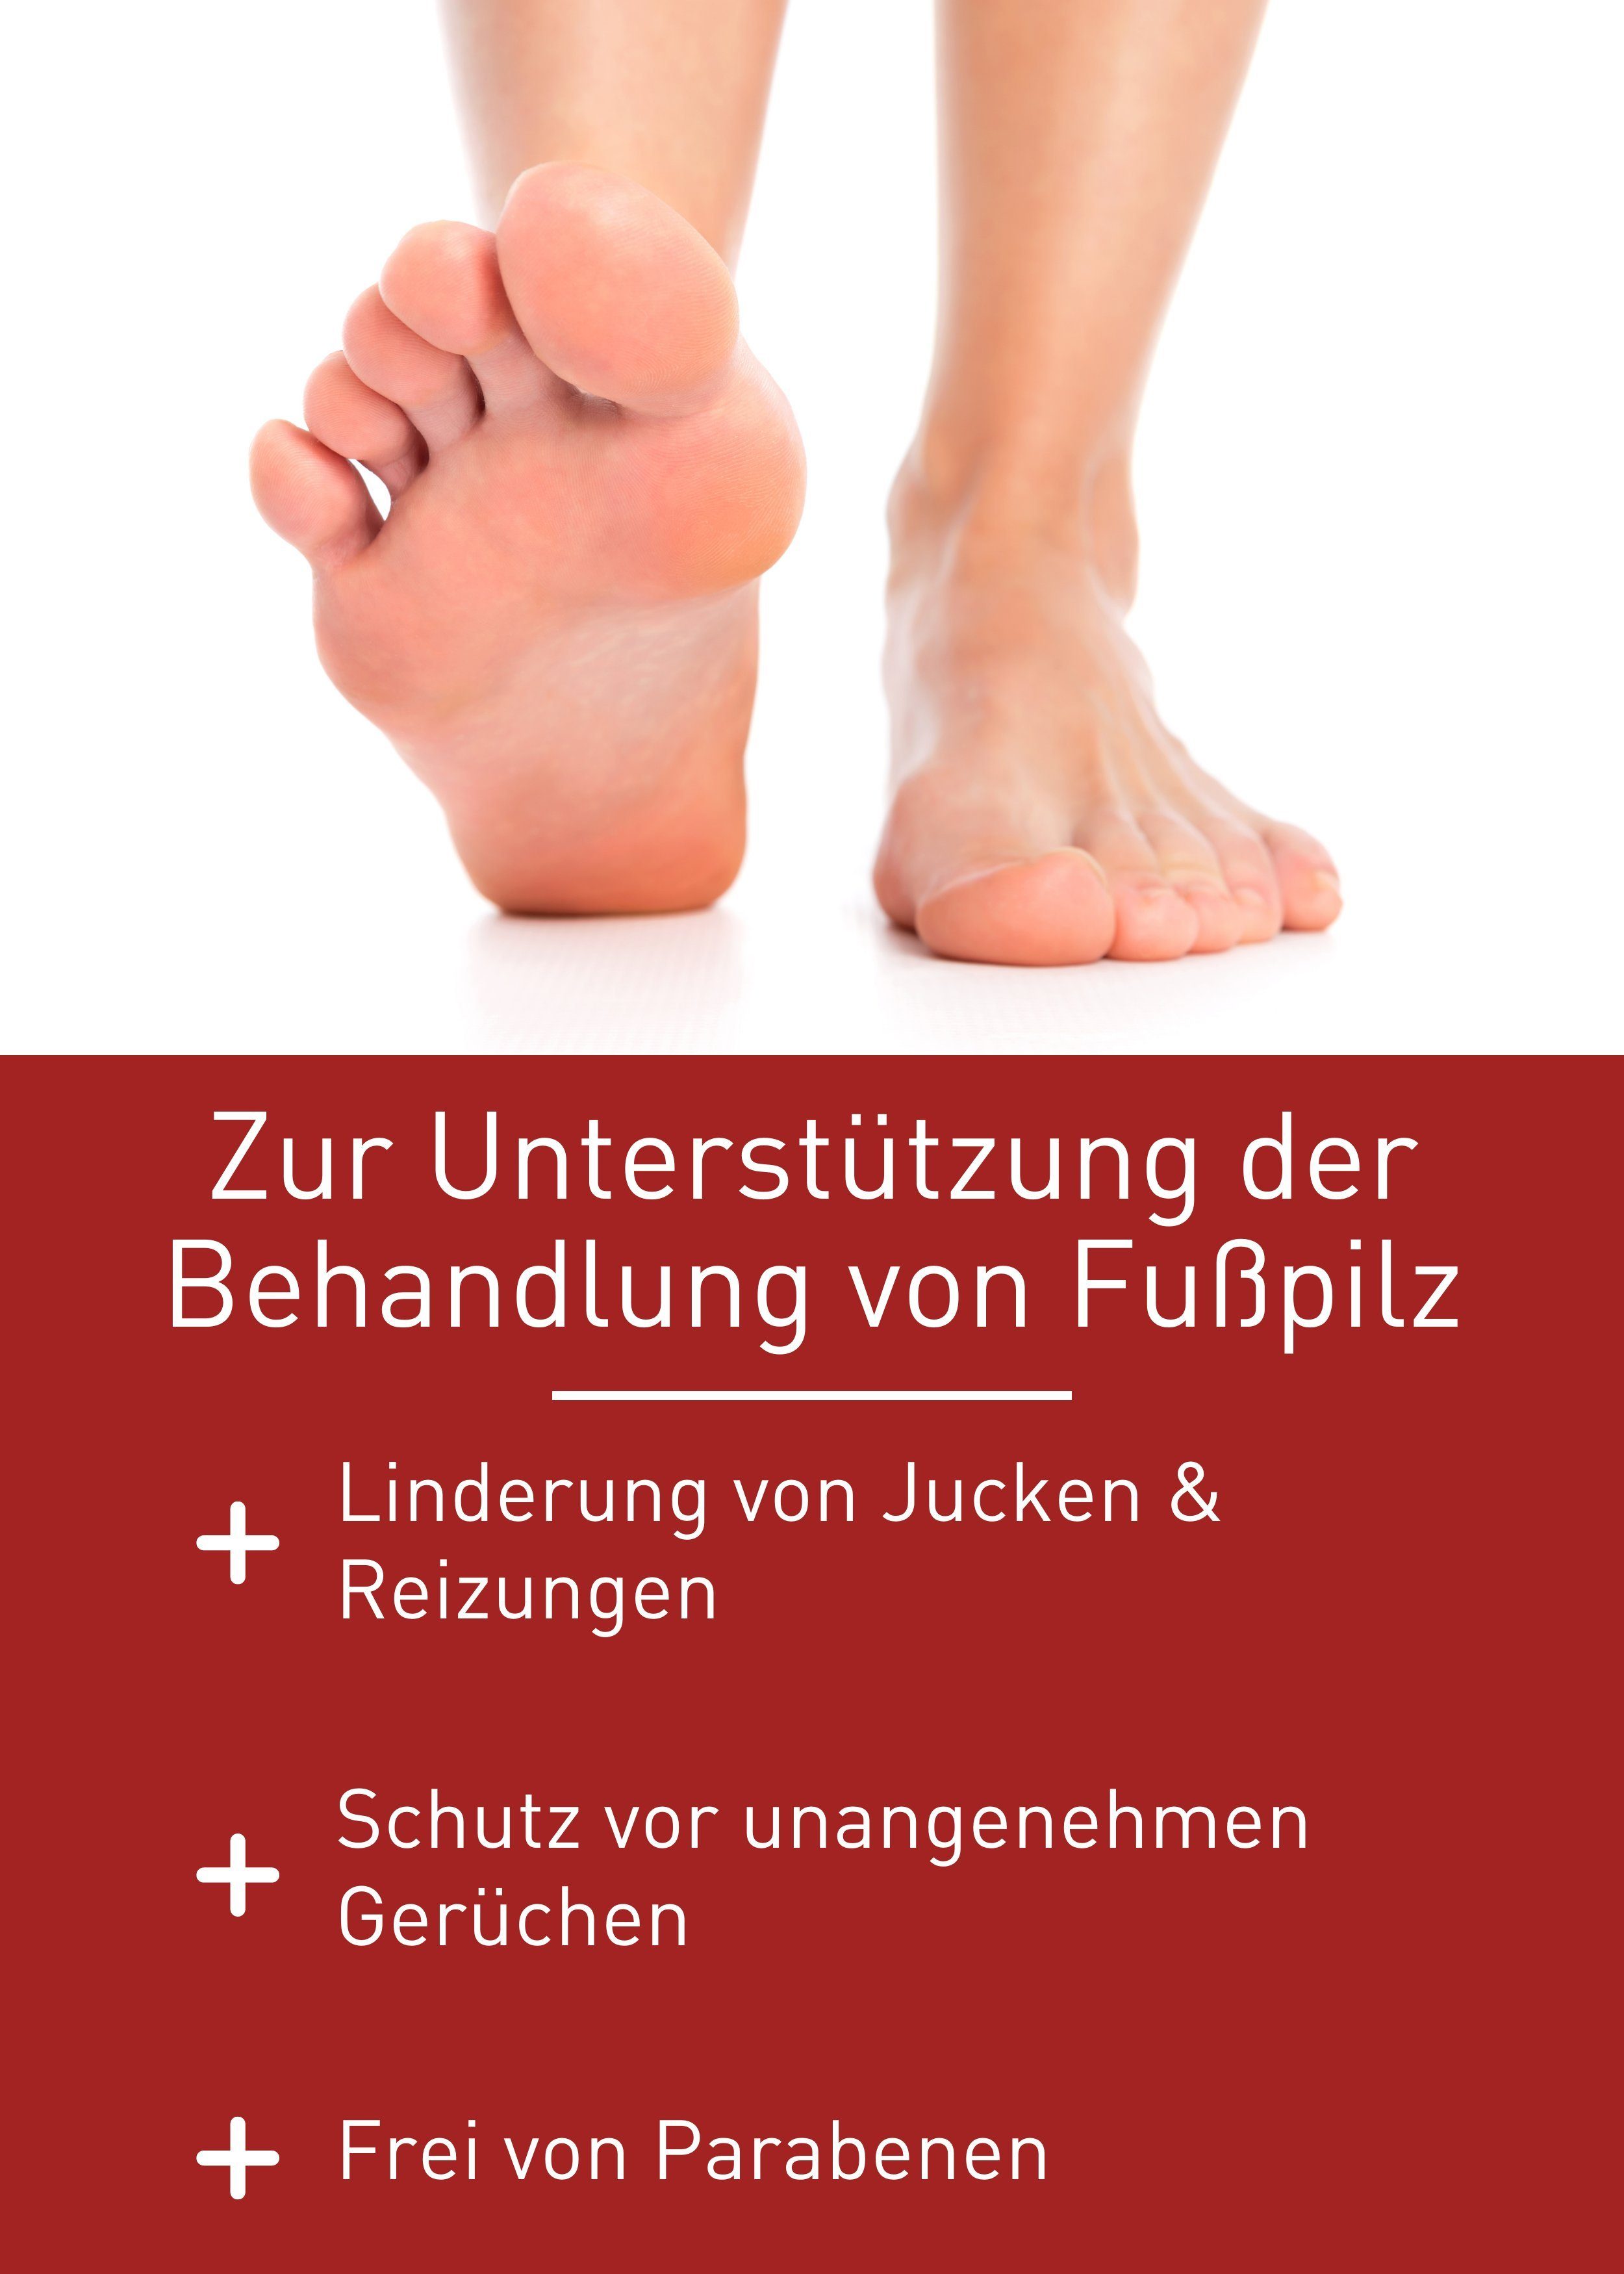 N1 Healthcare Fußpflegecreme Medizinprodukt, Fußpilz, von Behandlung patentierte Rezeptur Fußpilz Gel zur